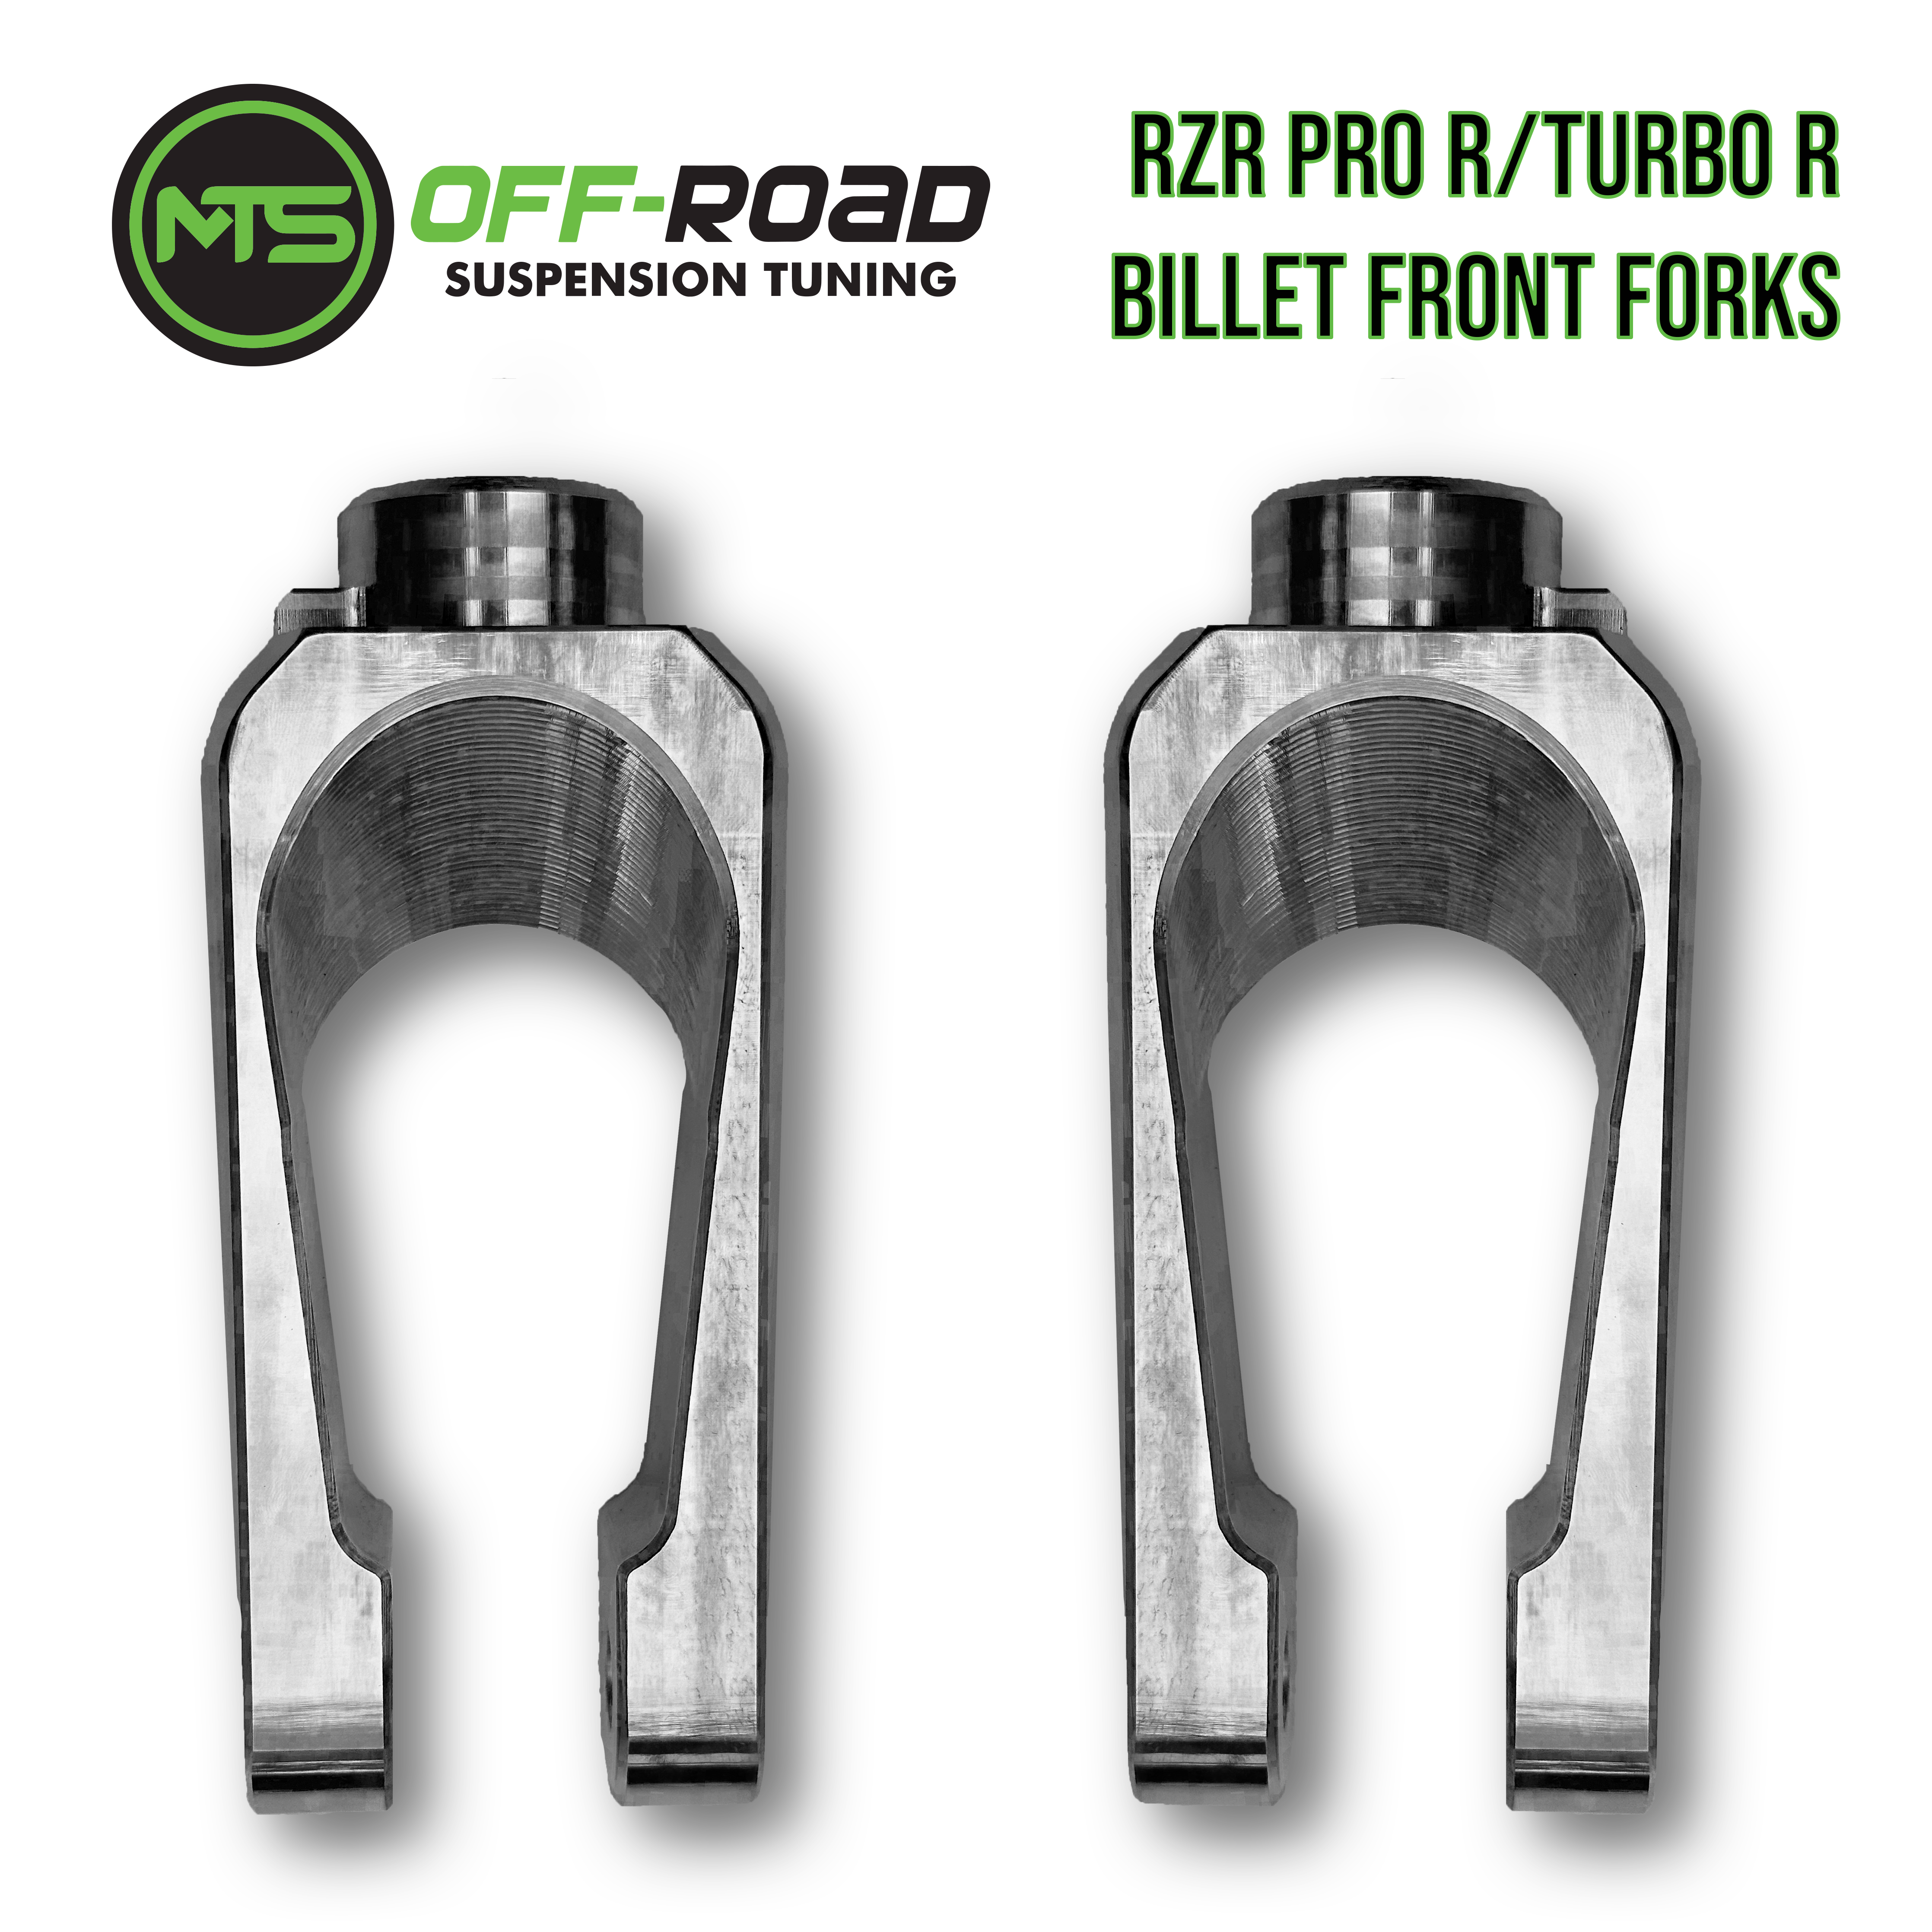 Polaris RZR Pro R/Turbo R Billet Front Shock Forks - Set of 2